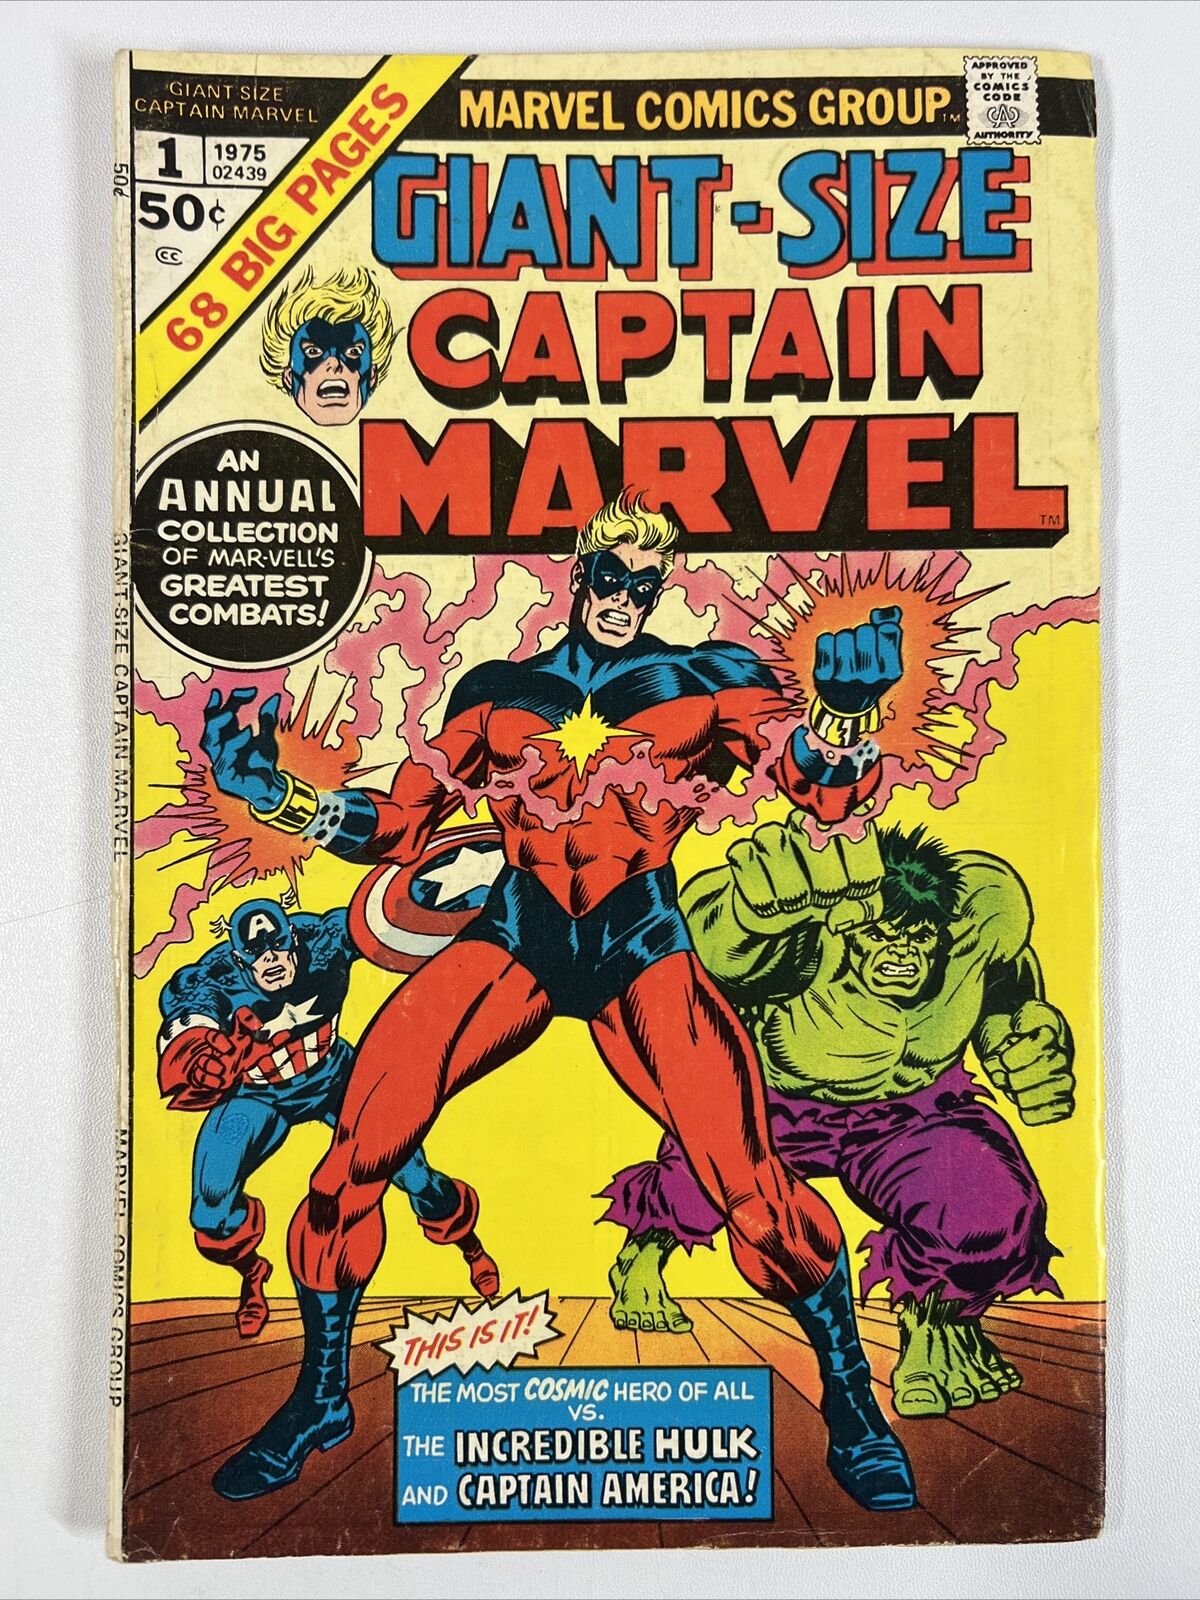 Giant Size Captain Marvel #1 (1975) Hulk ~ Captain America ~ Marvel Comics